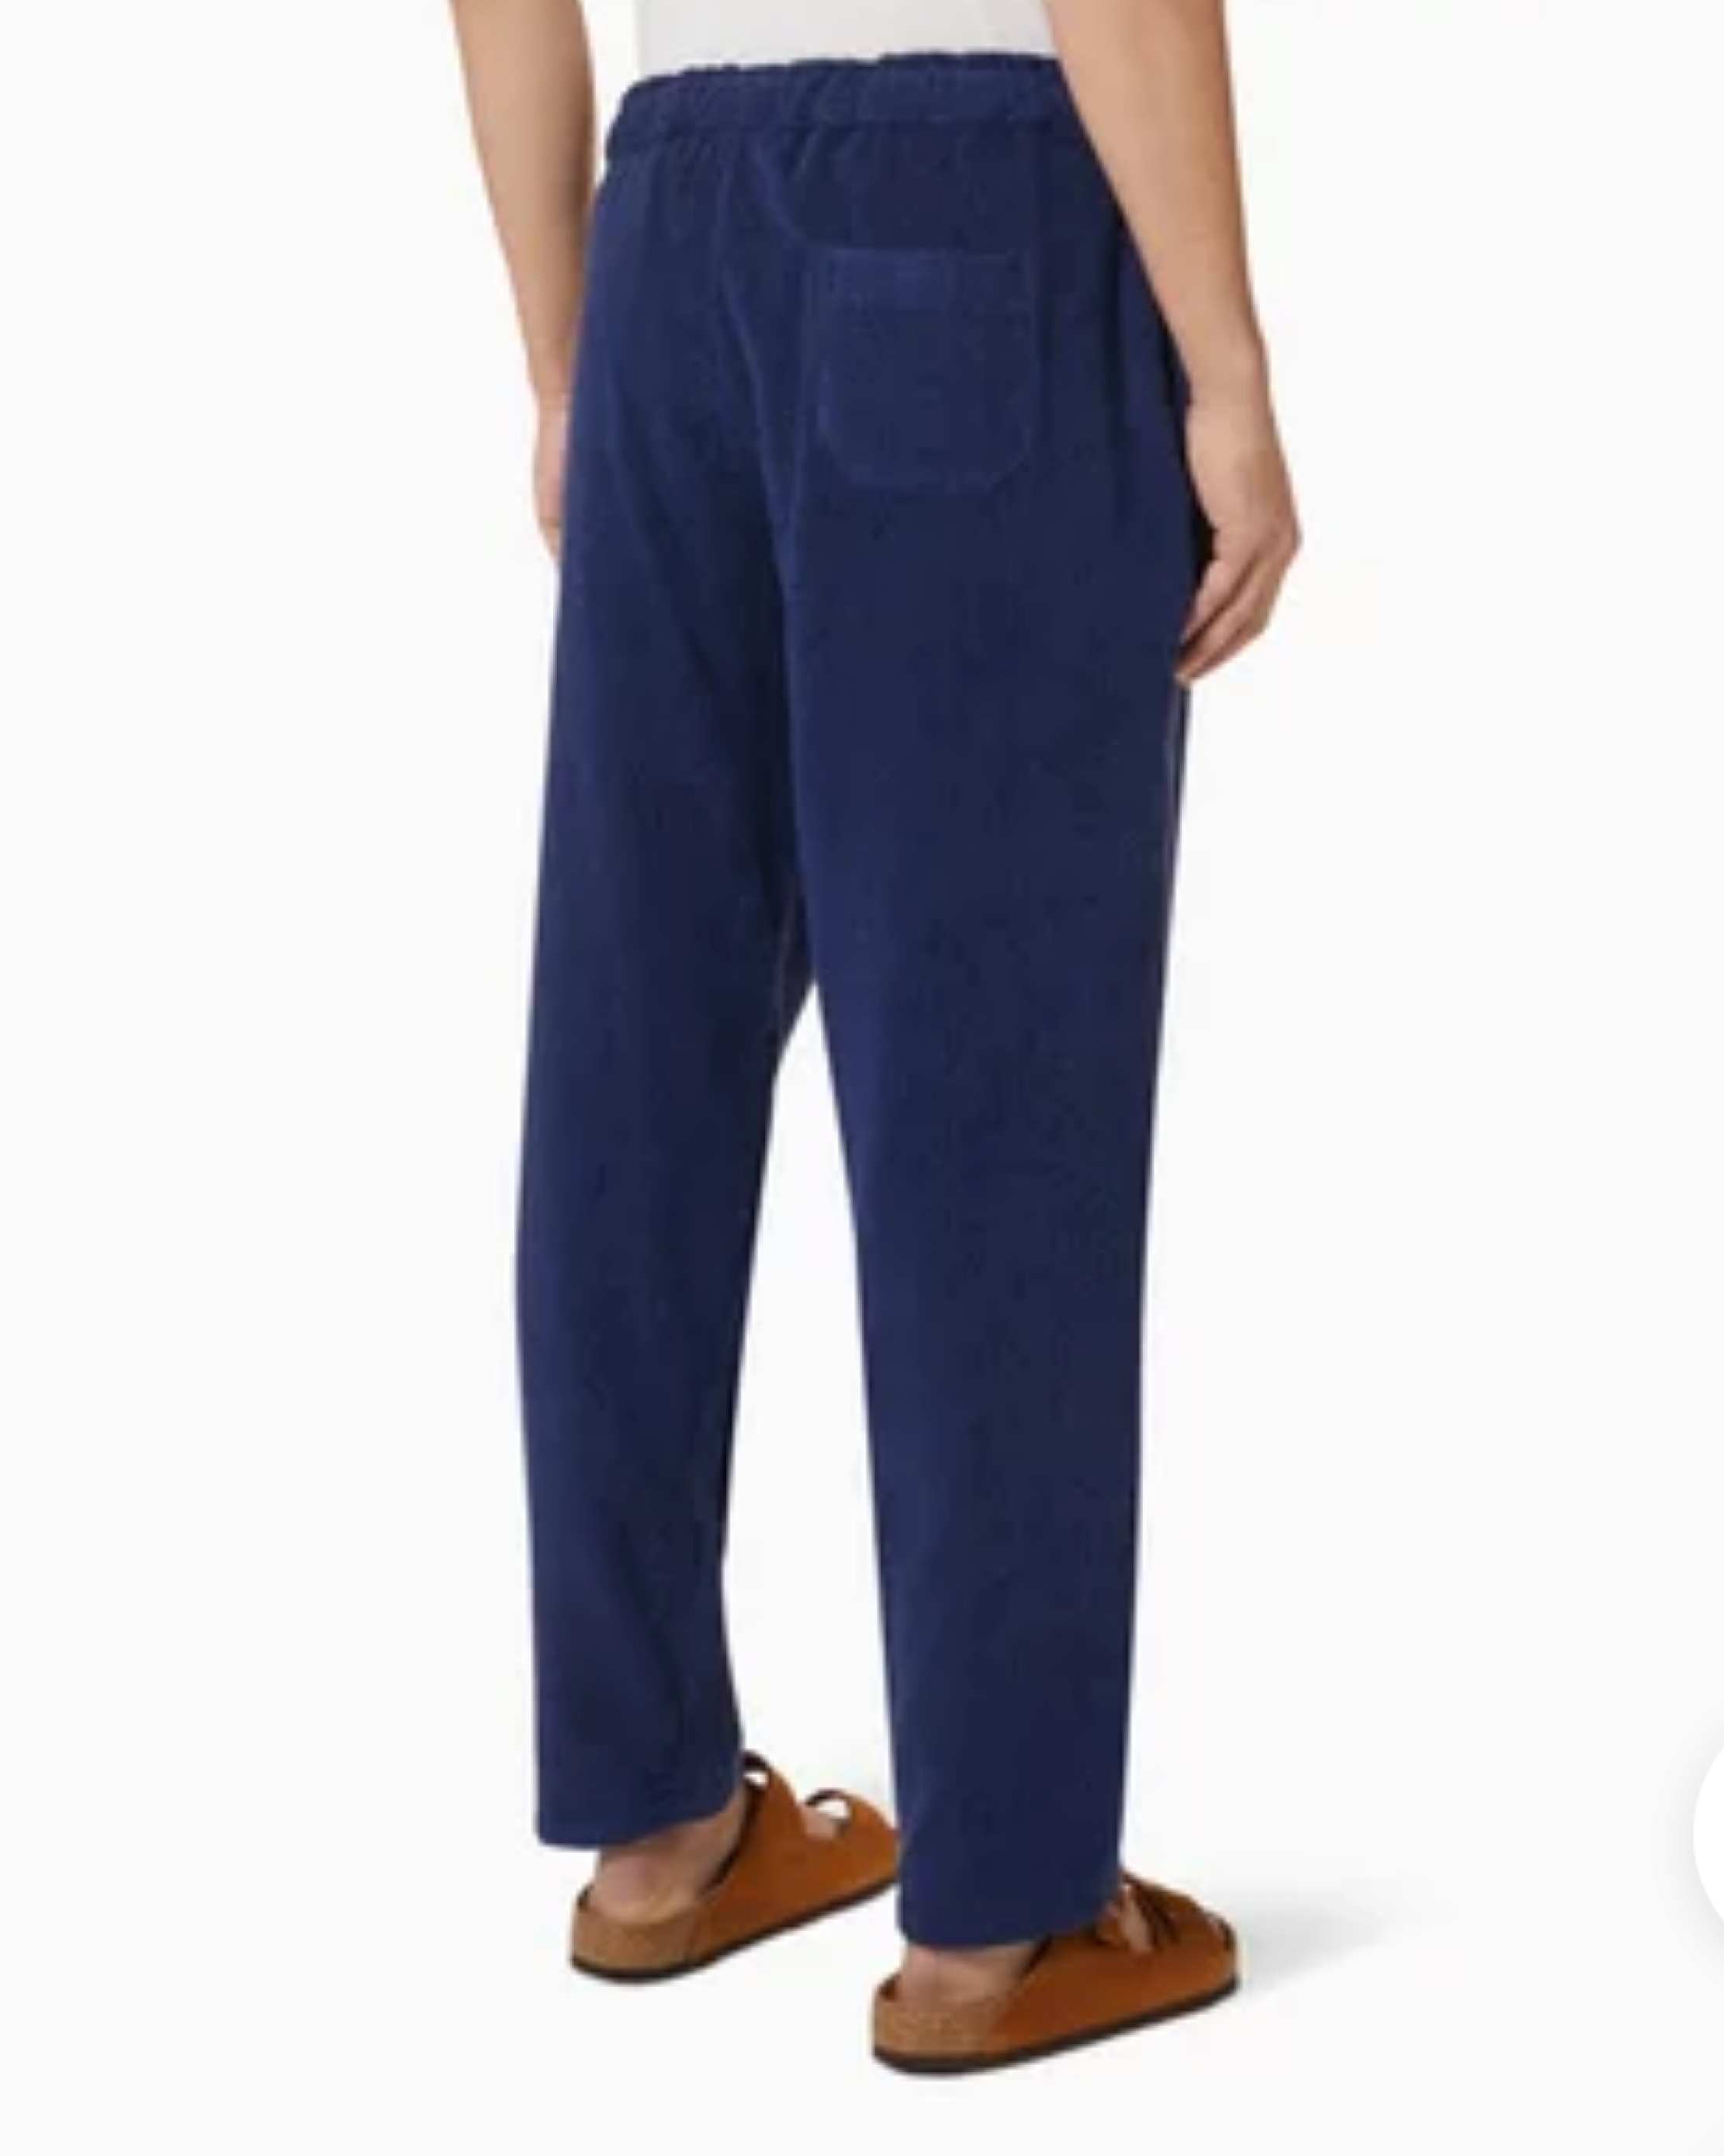 מכנס מגבת גבר כחול